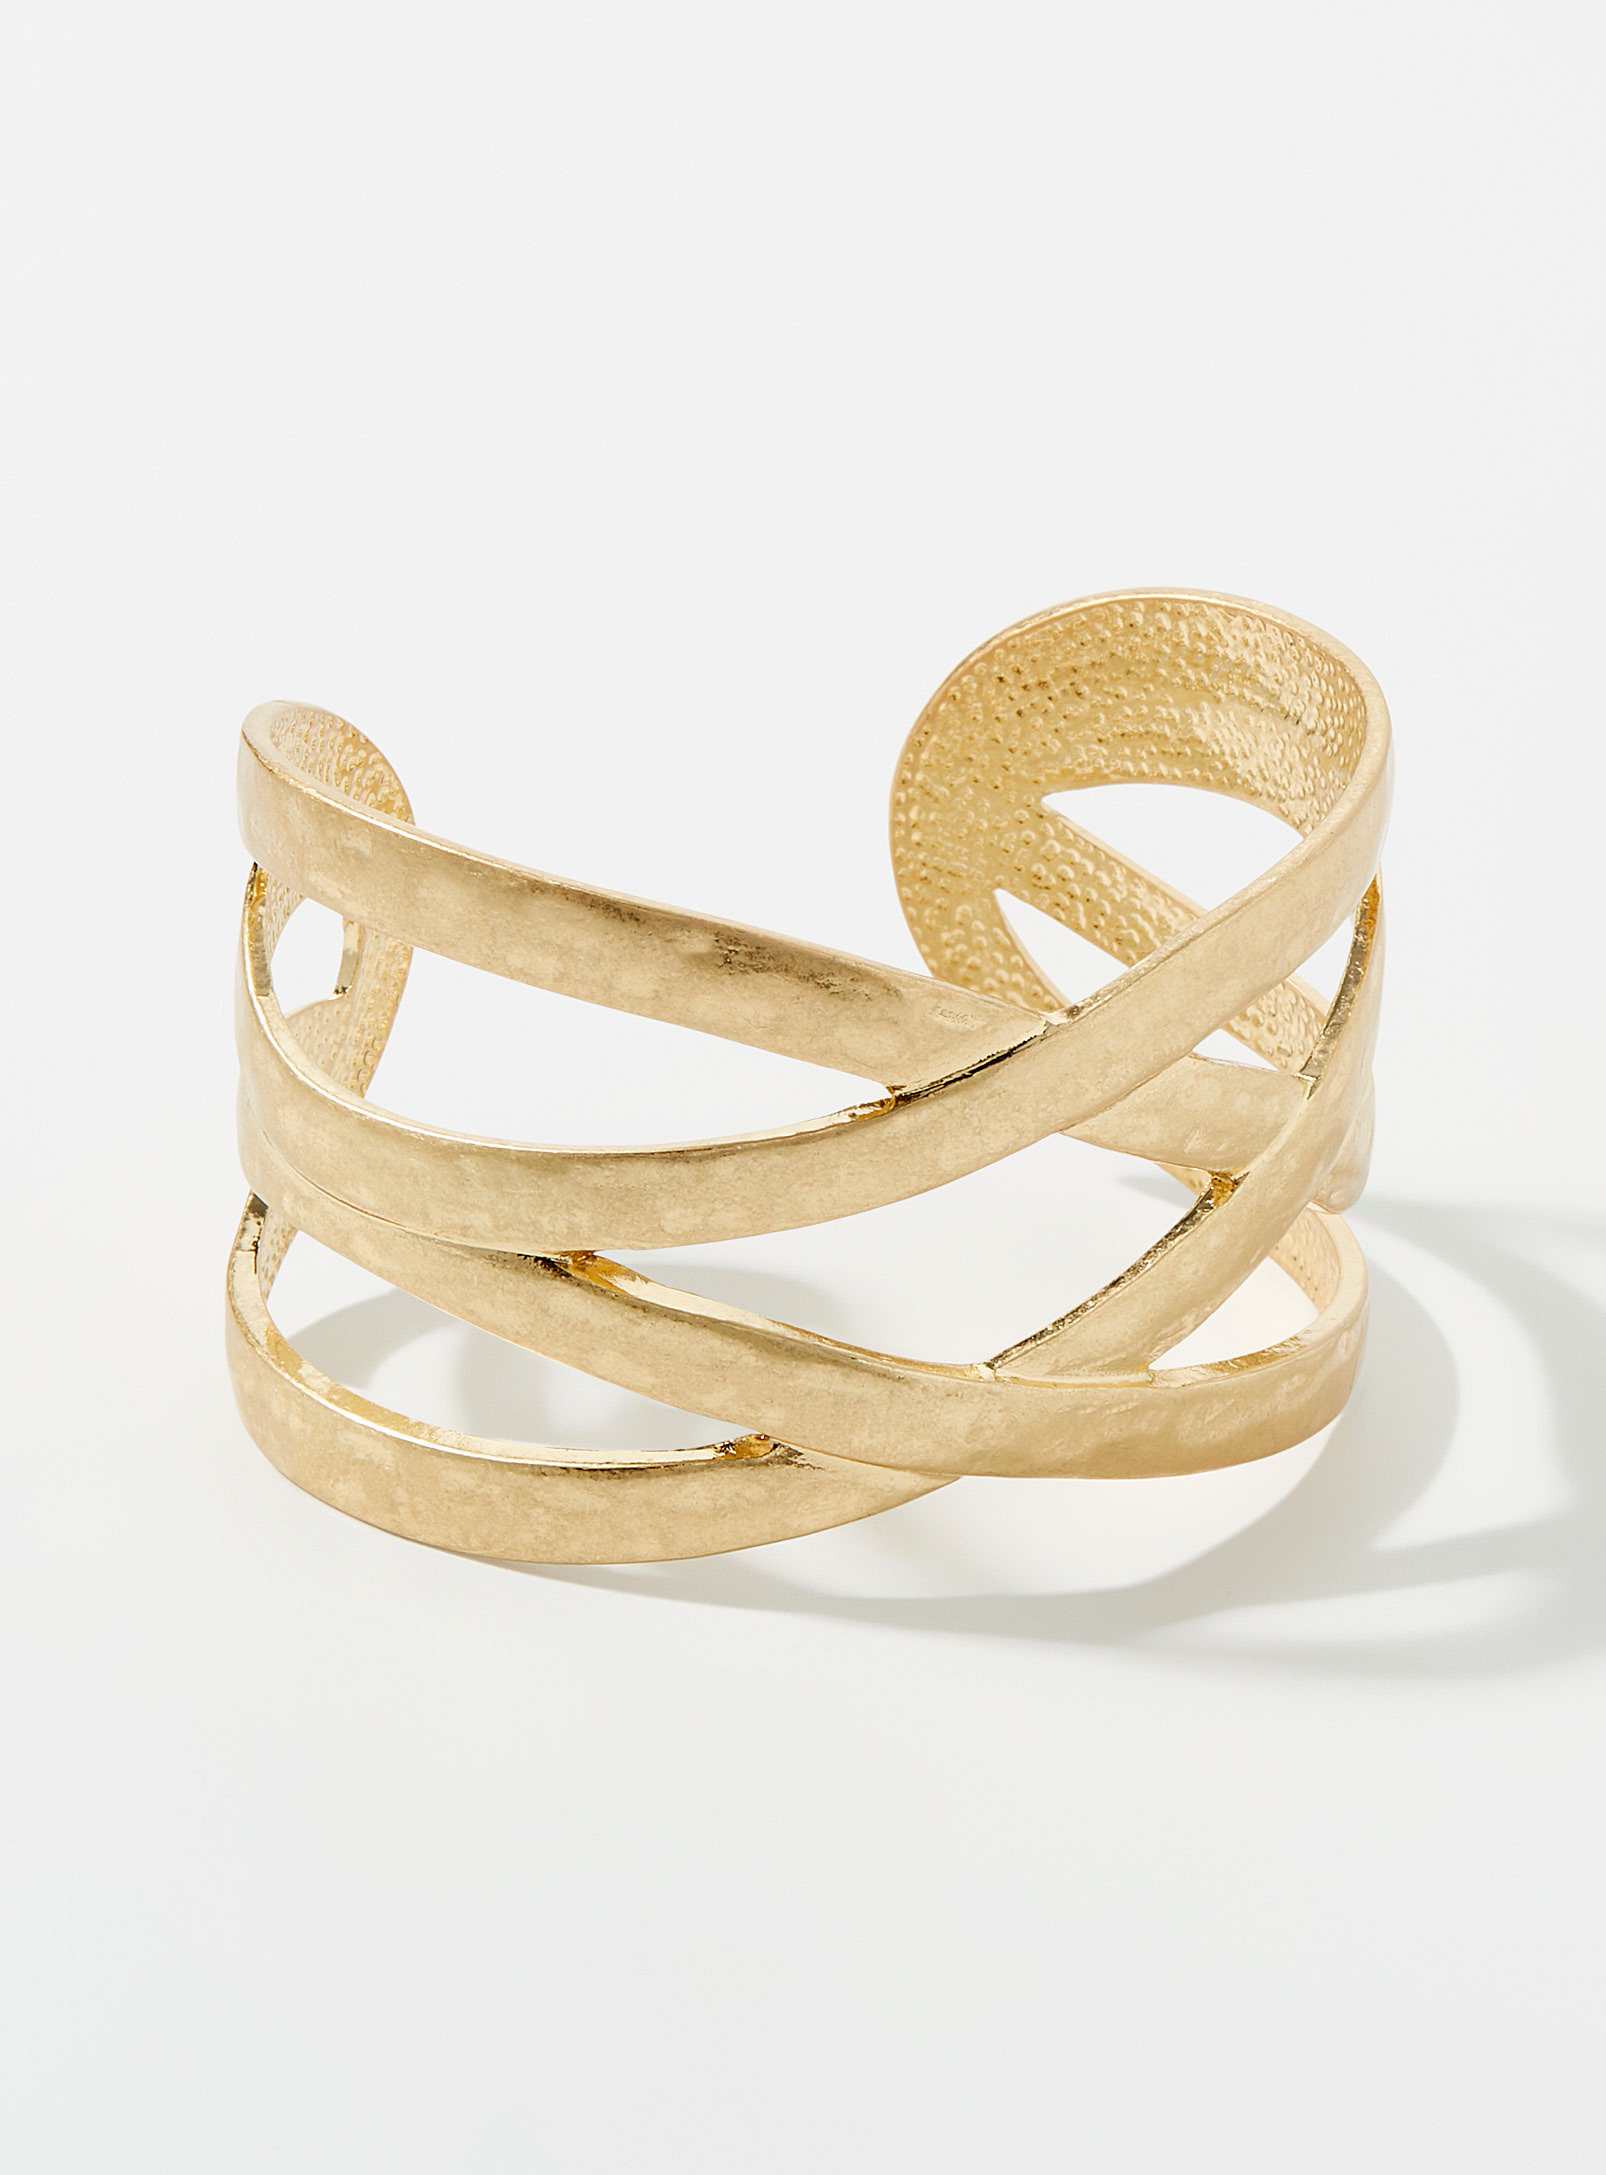 Simons - Women's Openwork wide cuff bracelet